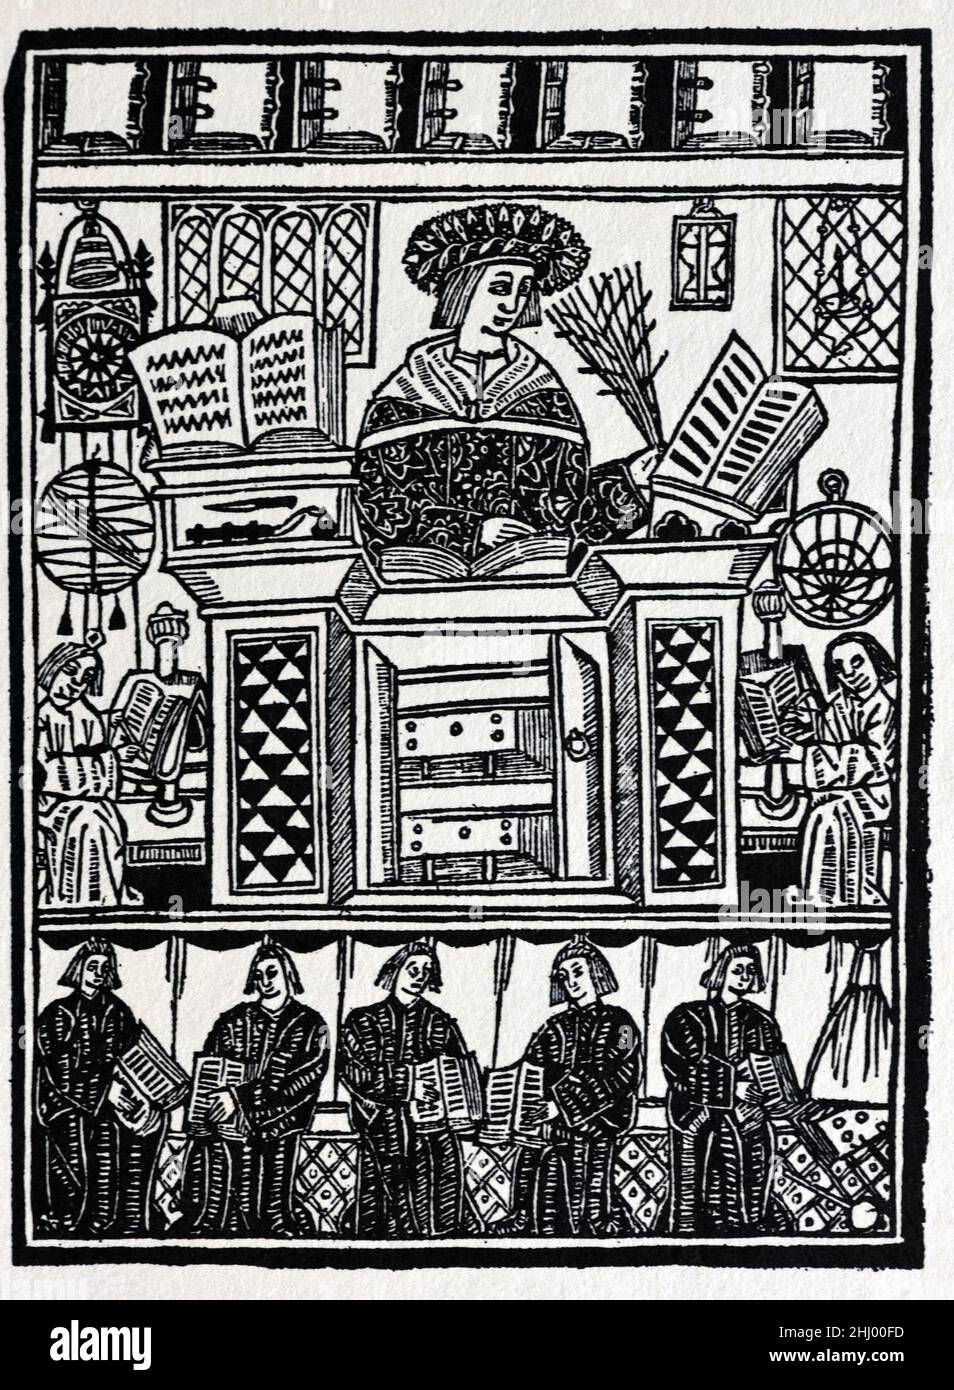 1519 Szene, in der Gelehrte, Lehrer & Studenten an der Oxford University England gezeigt werden. c16th Vintage Holzschnitt Print, Gravur oder Illustration Stockfoto